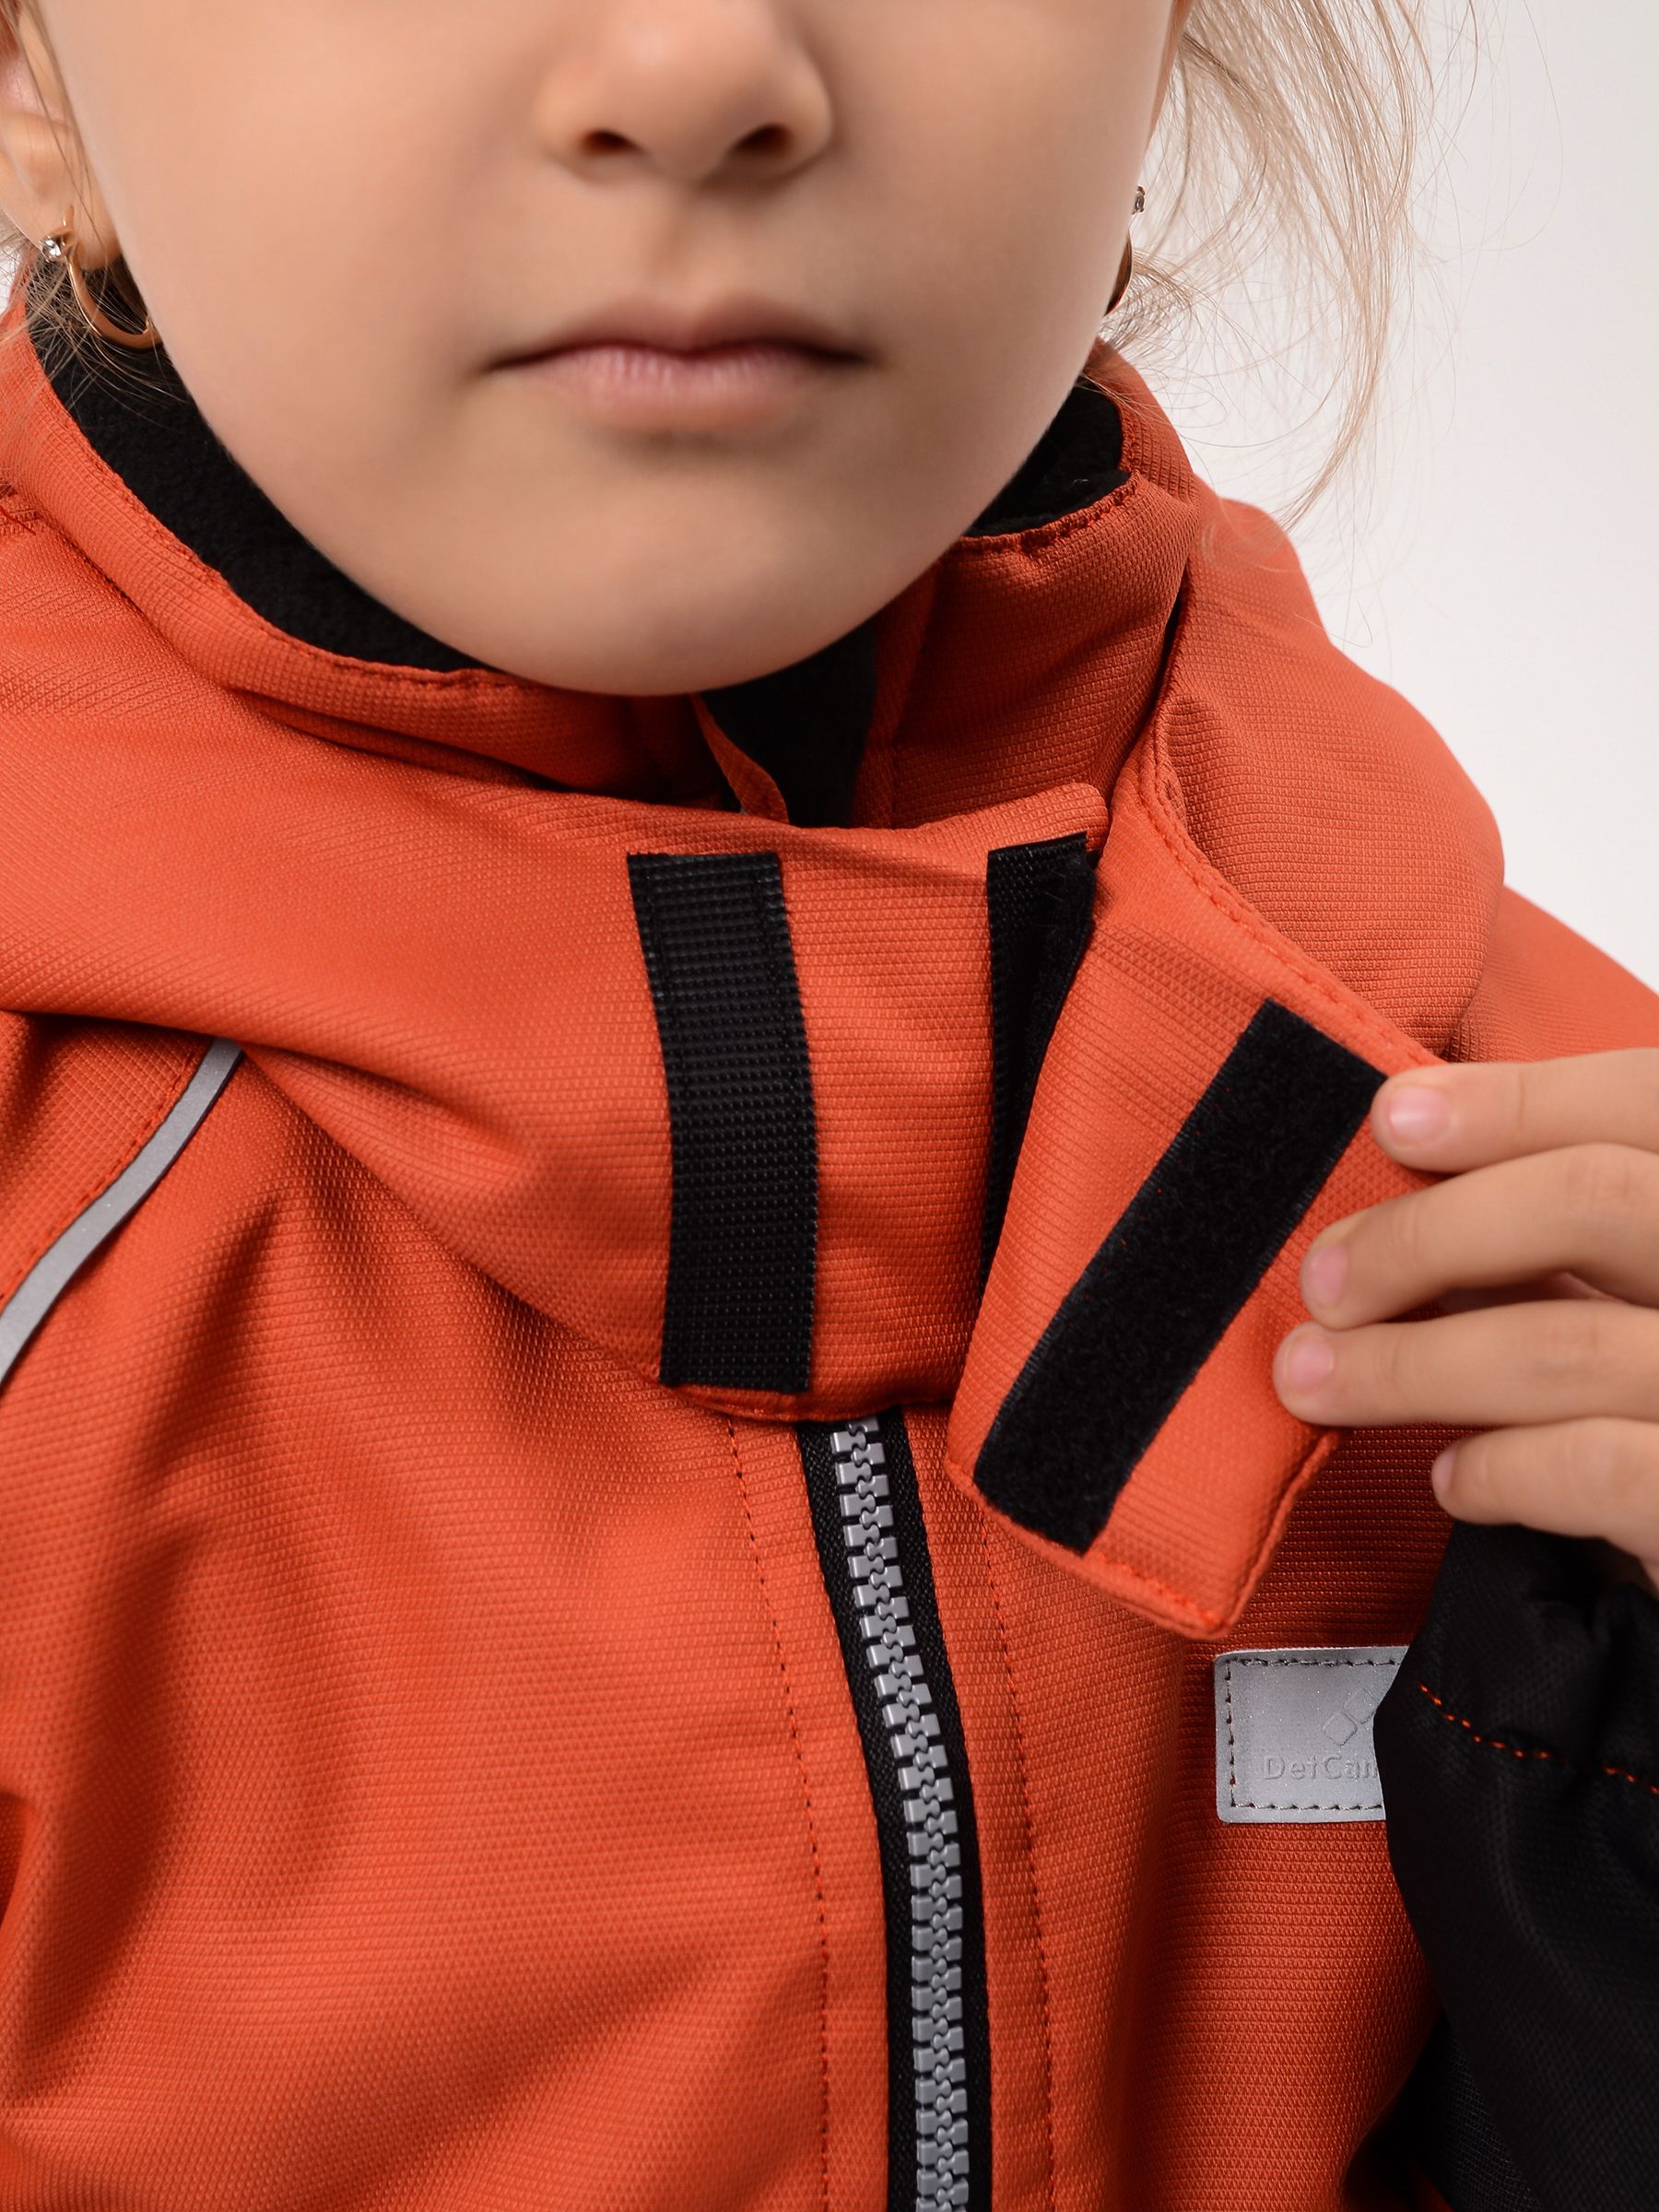 Демисезонный детский мембранный комбинезон Шмель, цвет оранжевый измембранной ткани